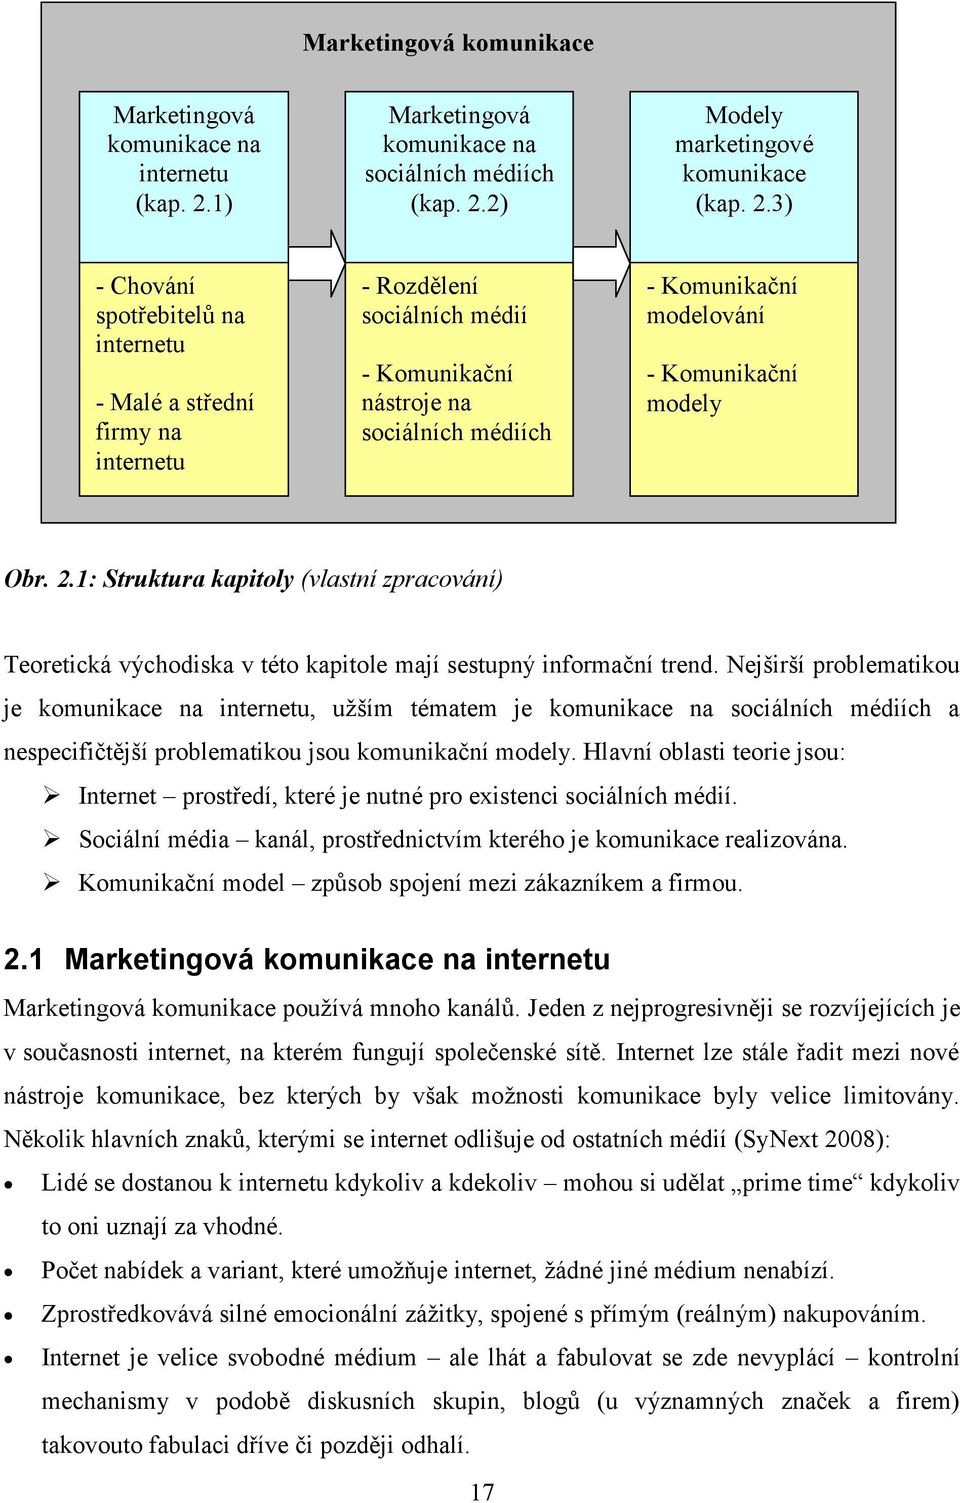 2) Modely marketingové komunikace (kap. 2.